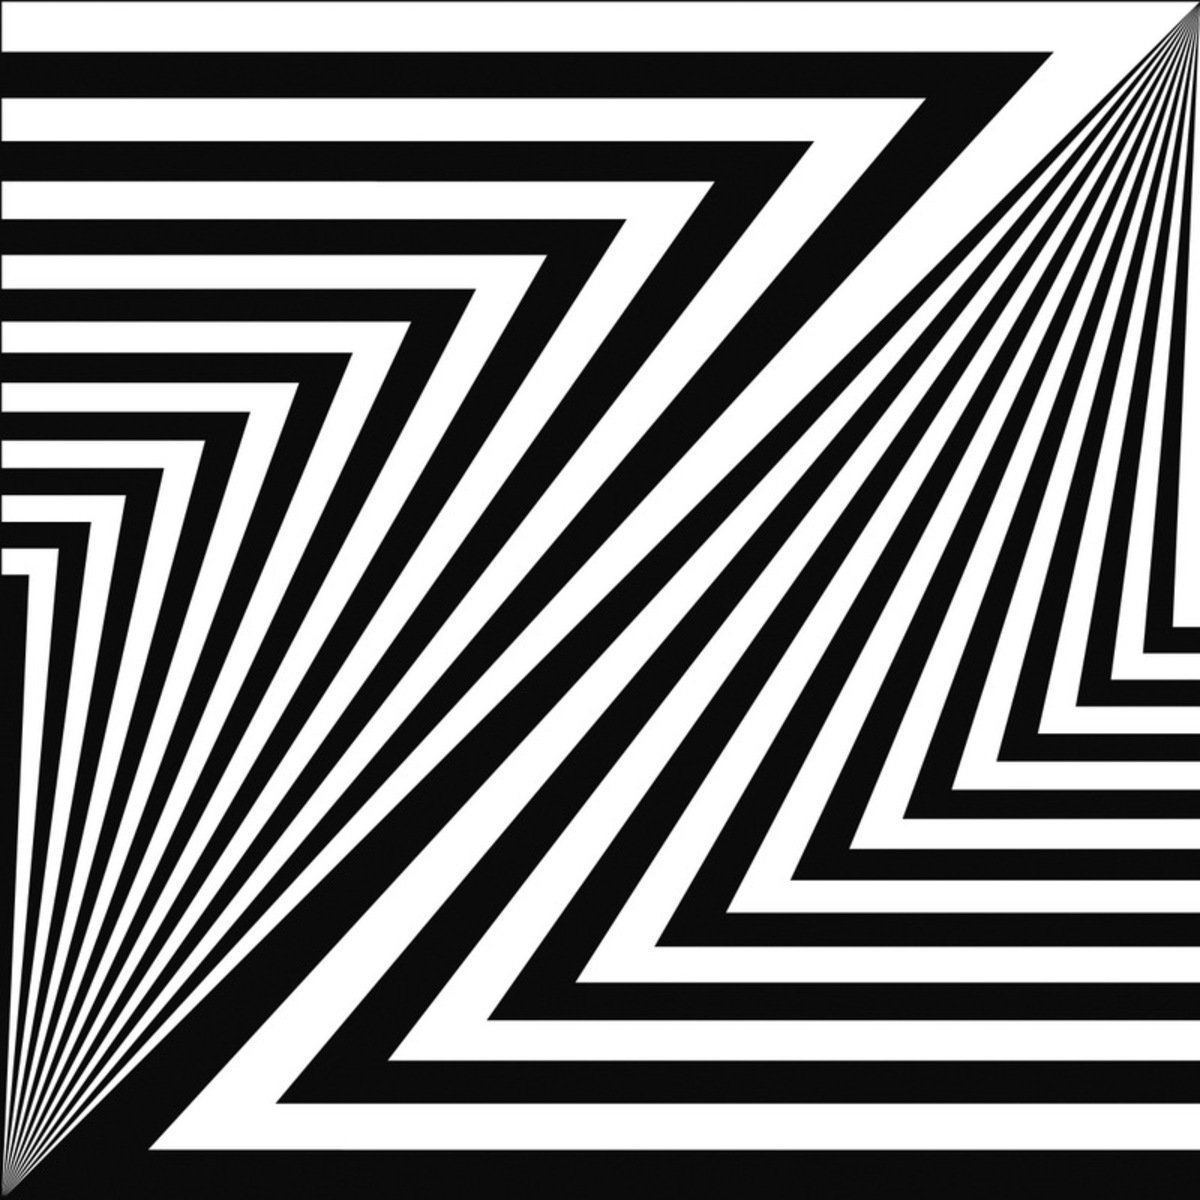 Геометрические фигуры прямые линии. Графические иллюзии. Оптическая иллюзия композиция. Оптические иллюзии полосы. ОП-арт оптическое искусство.